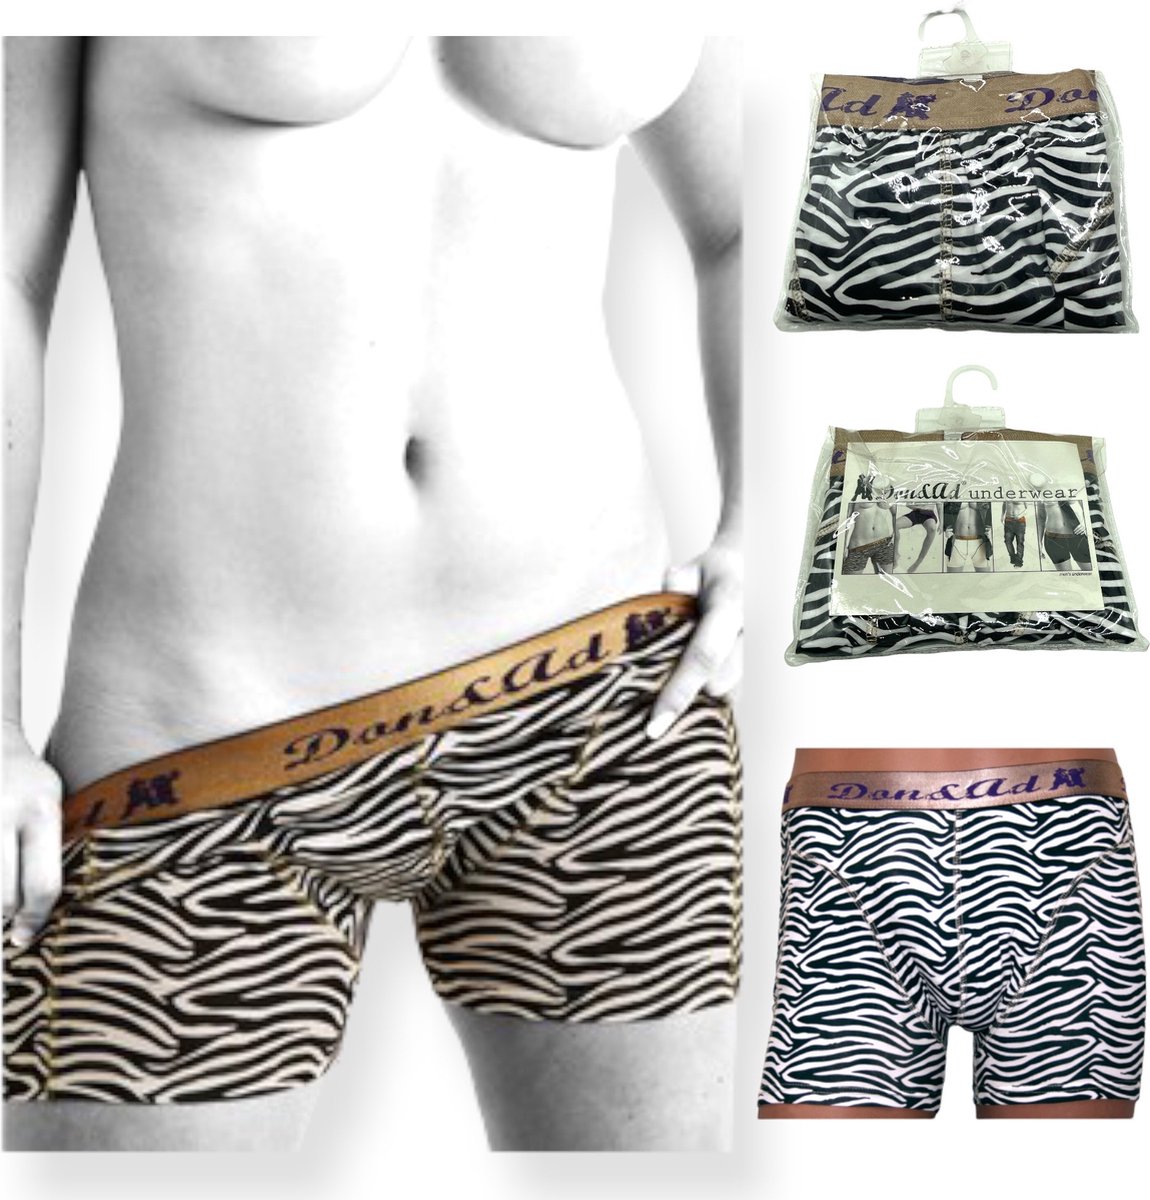 Don & Ad Onderbroeken Voor Mannen en Vrouwen Zebra Print Xtra Large